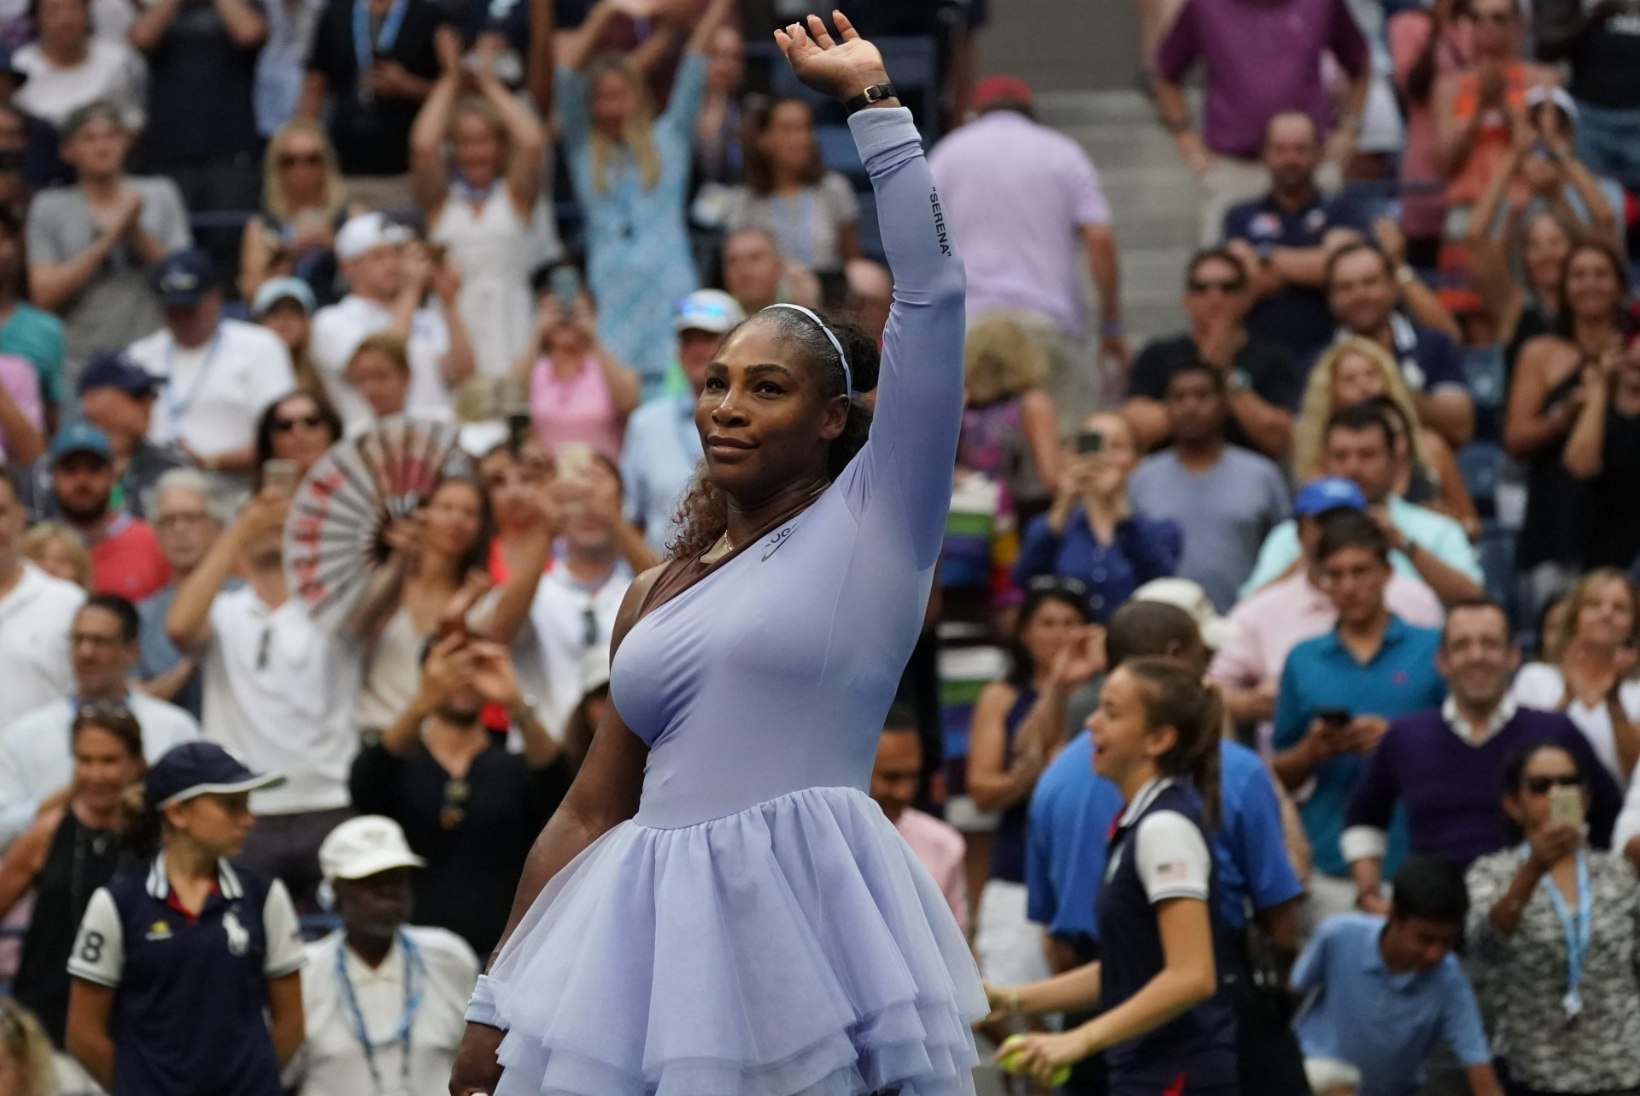 NII SEE JUHTUS | Kaia Kanepi ja Serena Williams pidasid uskumatu lahingu